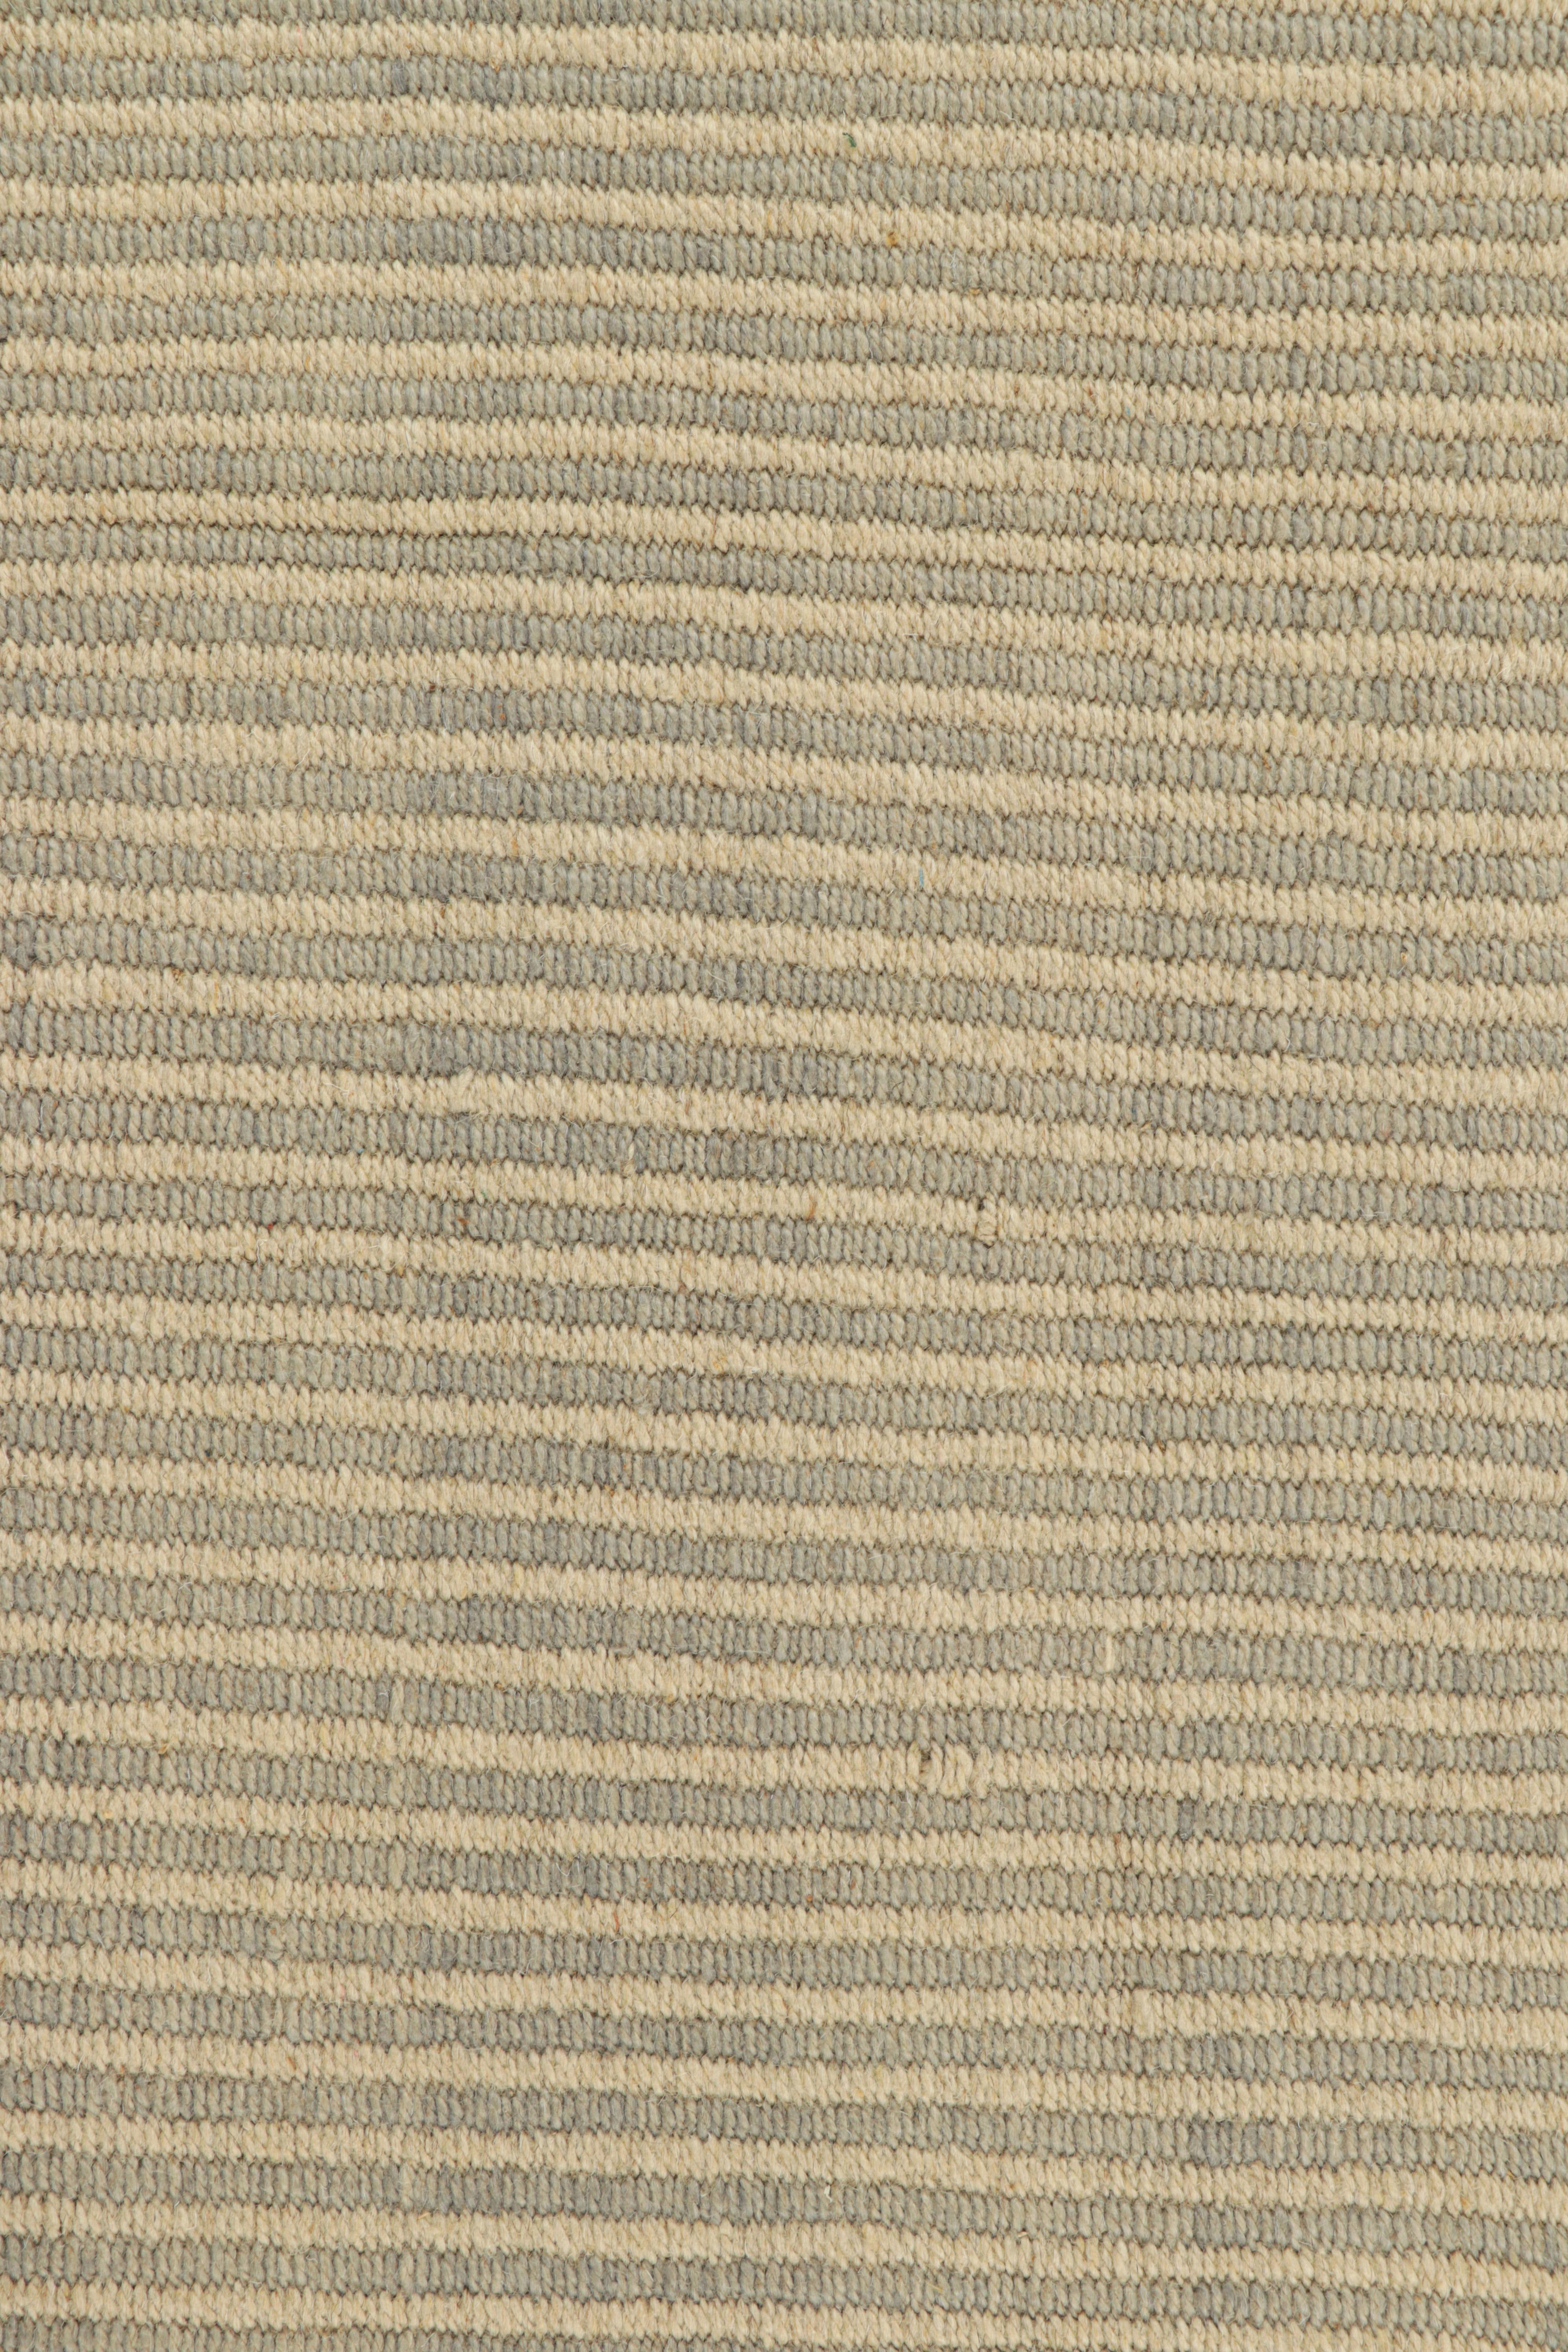 Moderne Rug & Kilim's Contemporary Kilim in Beige-Brown Textural Stripes (Kilim contemporain à rayures texturées beige et marron) en vente